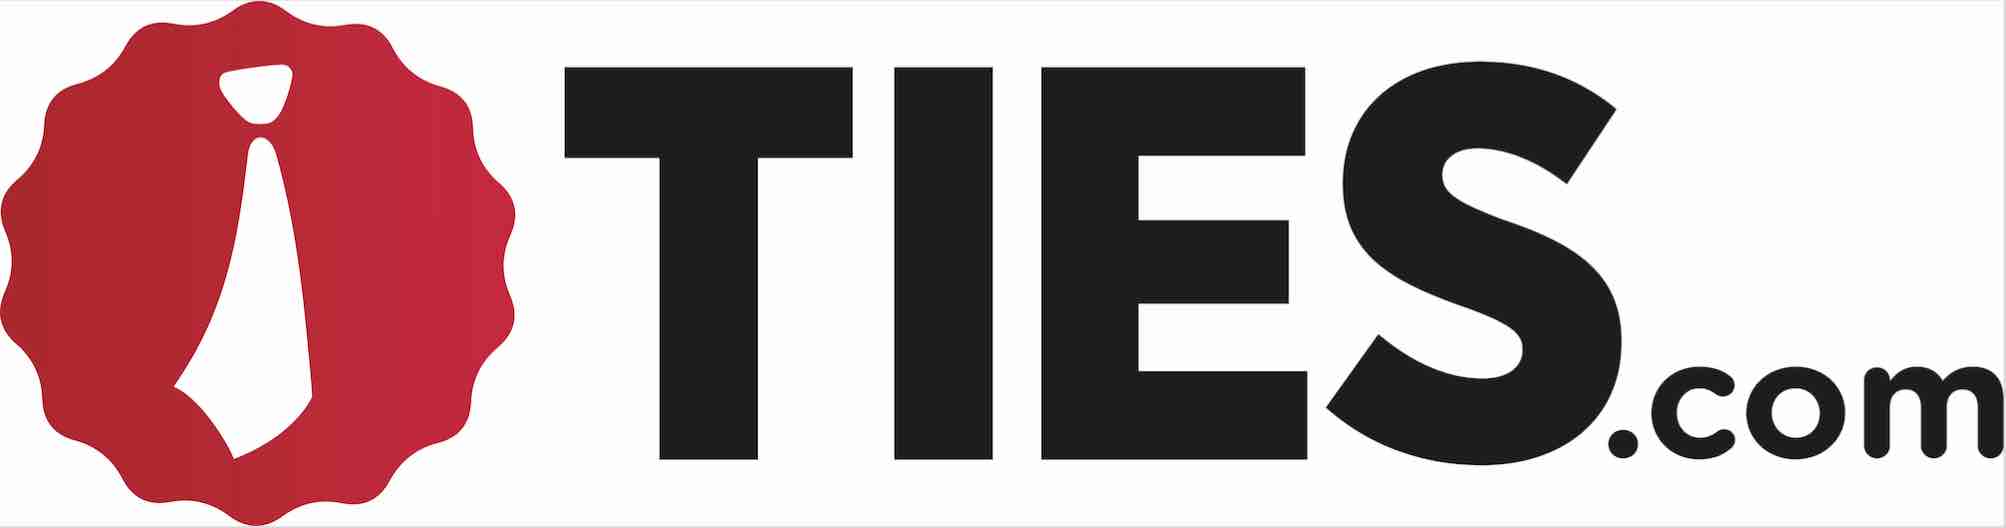 Ties.com Logo